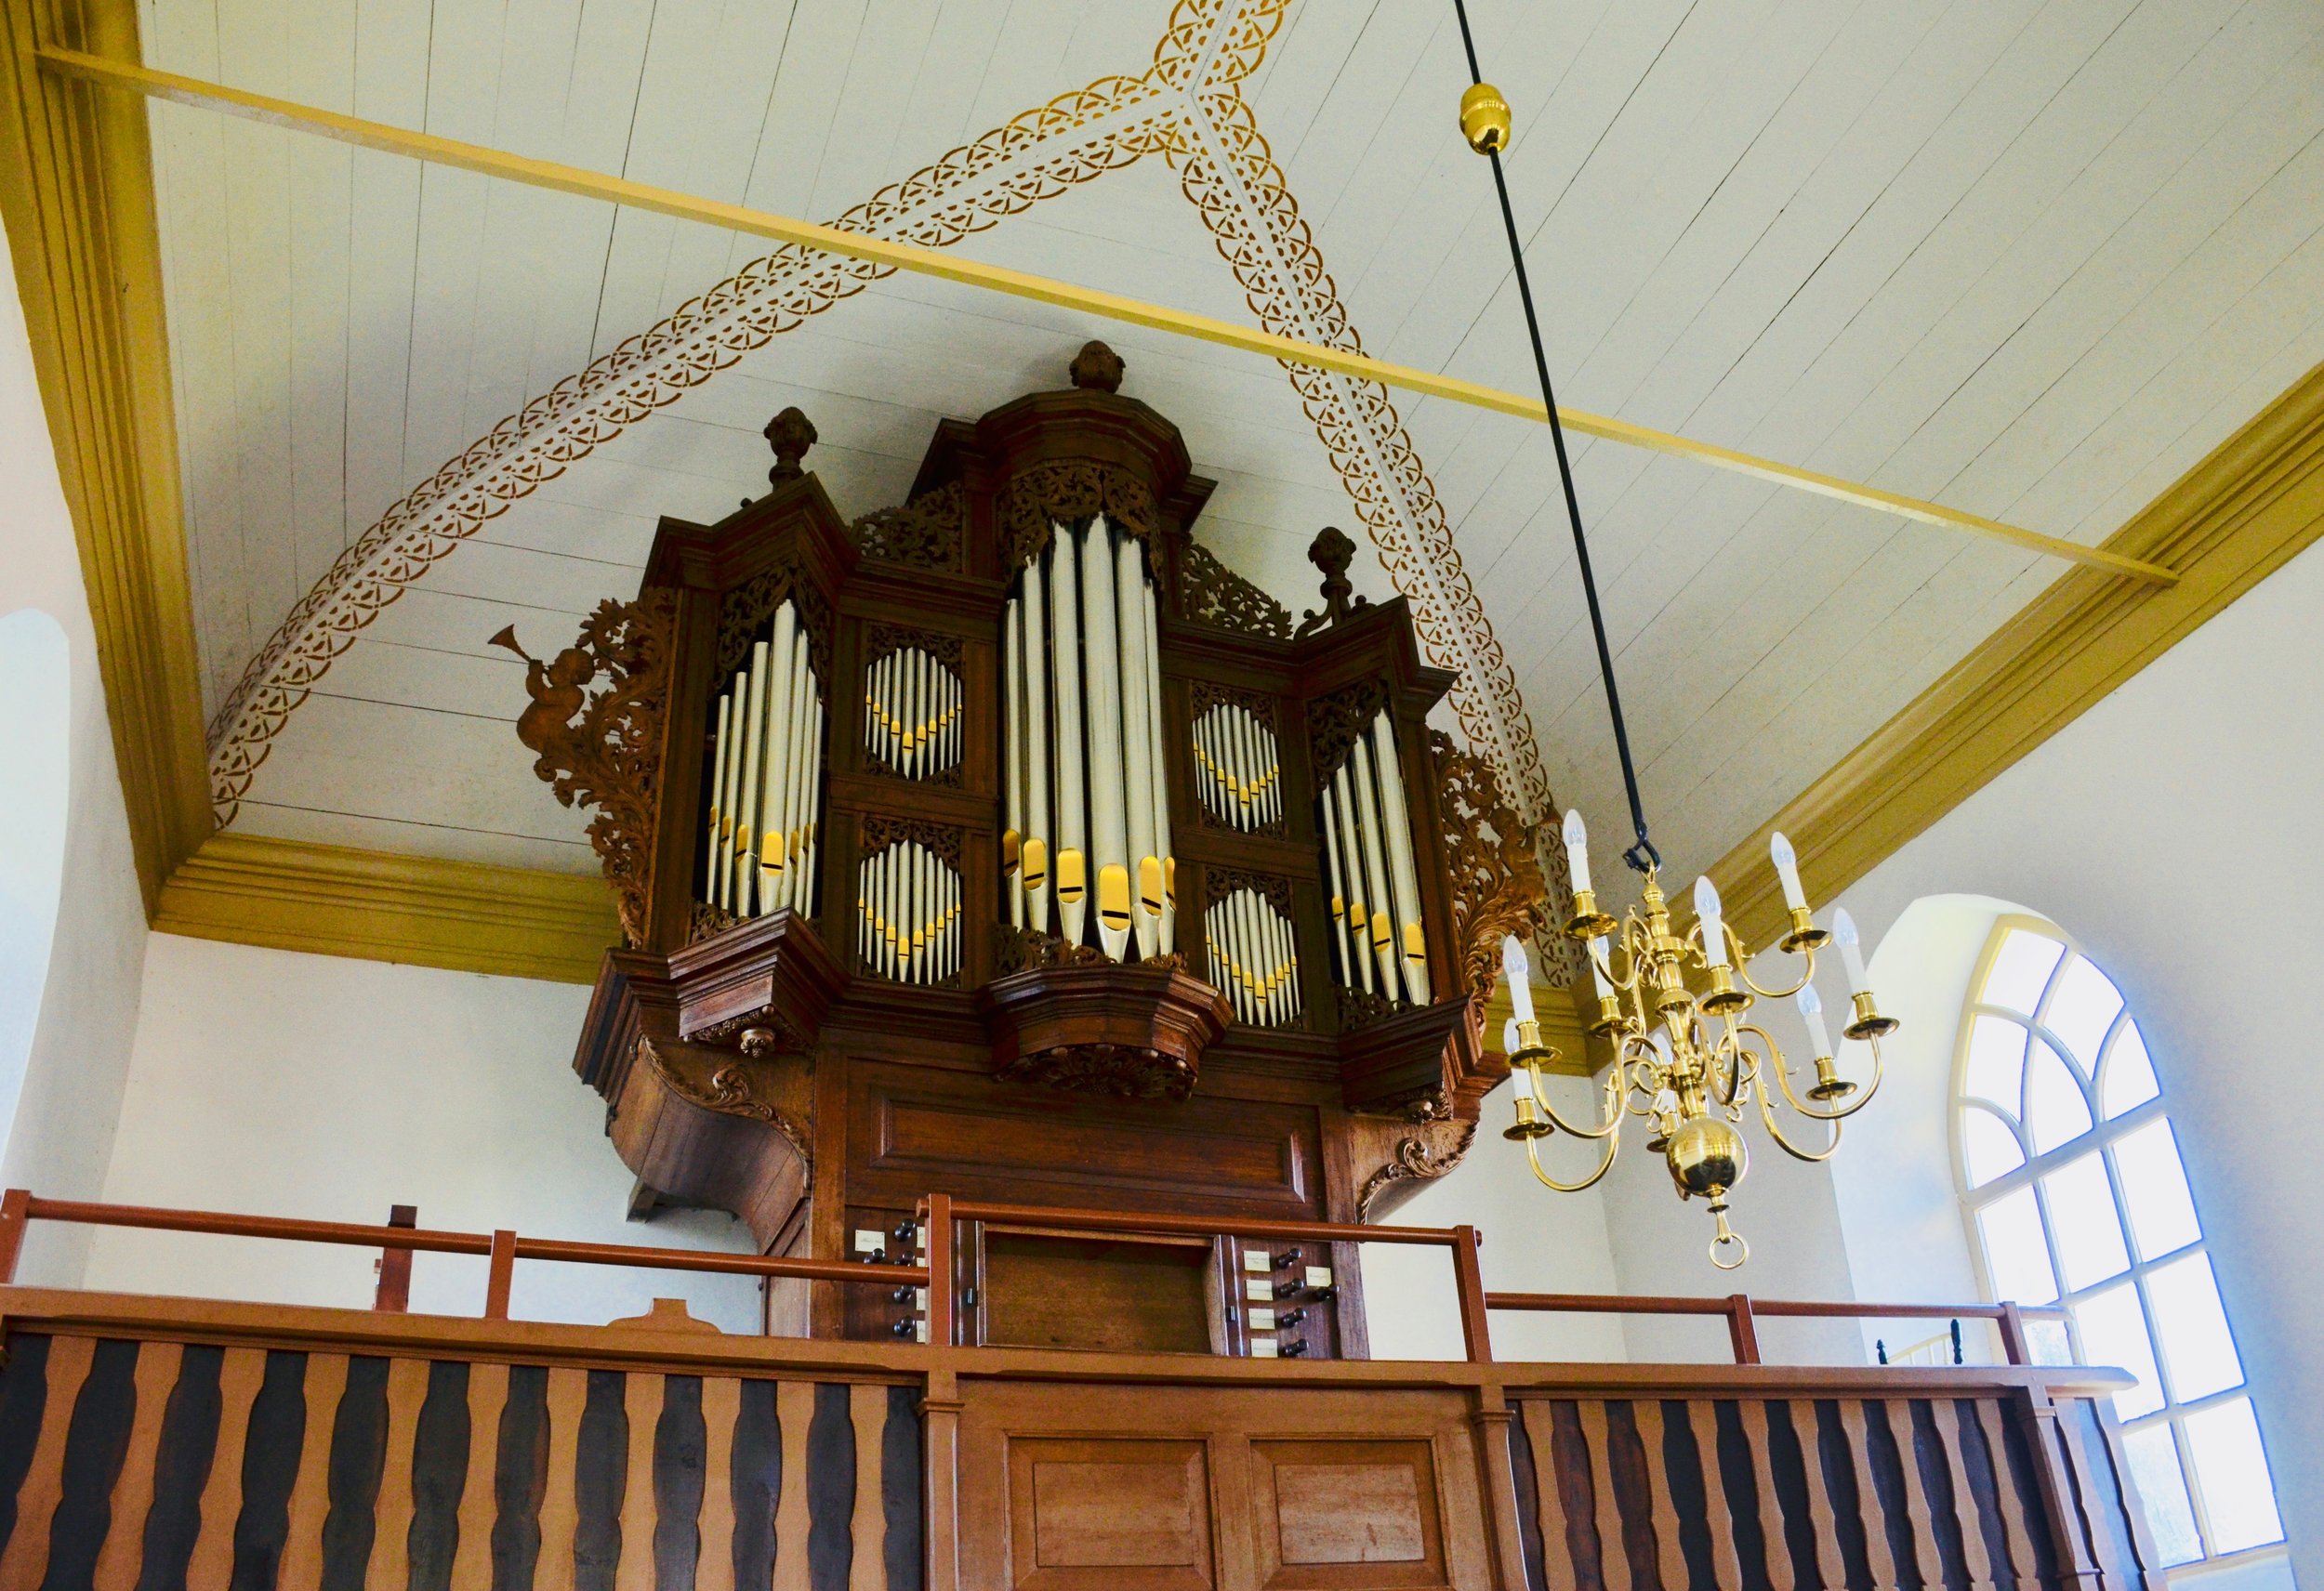  Schnitger organ, Michaëlkerk, Mensingeweer, Holland. 